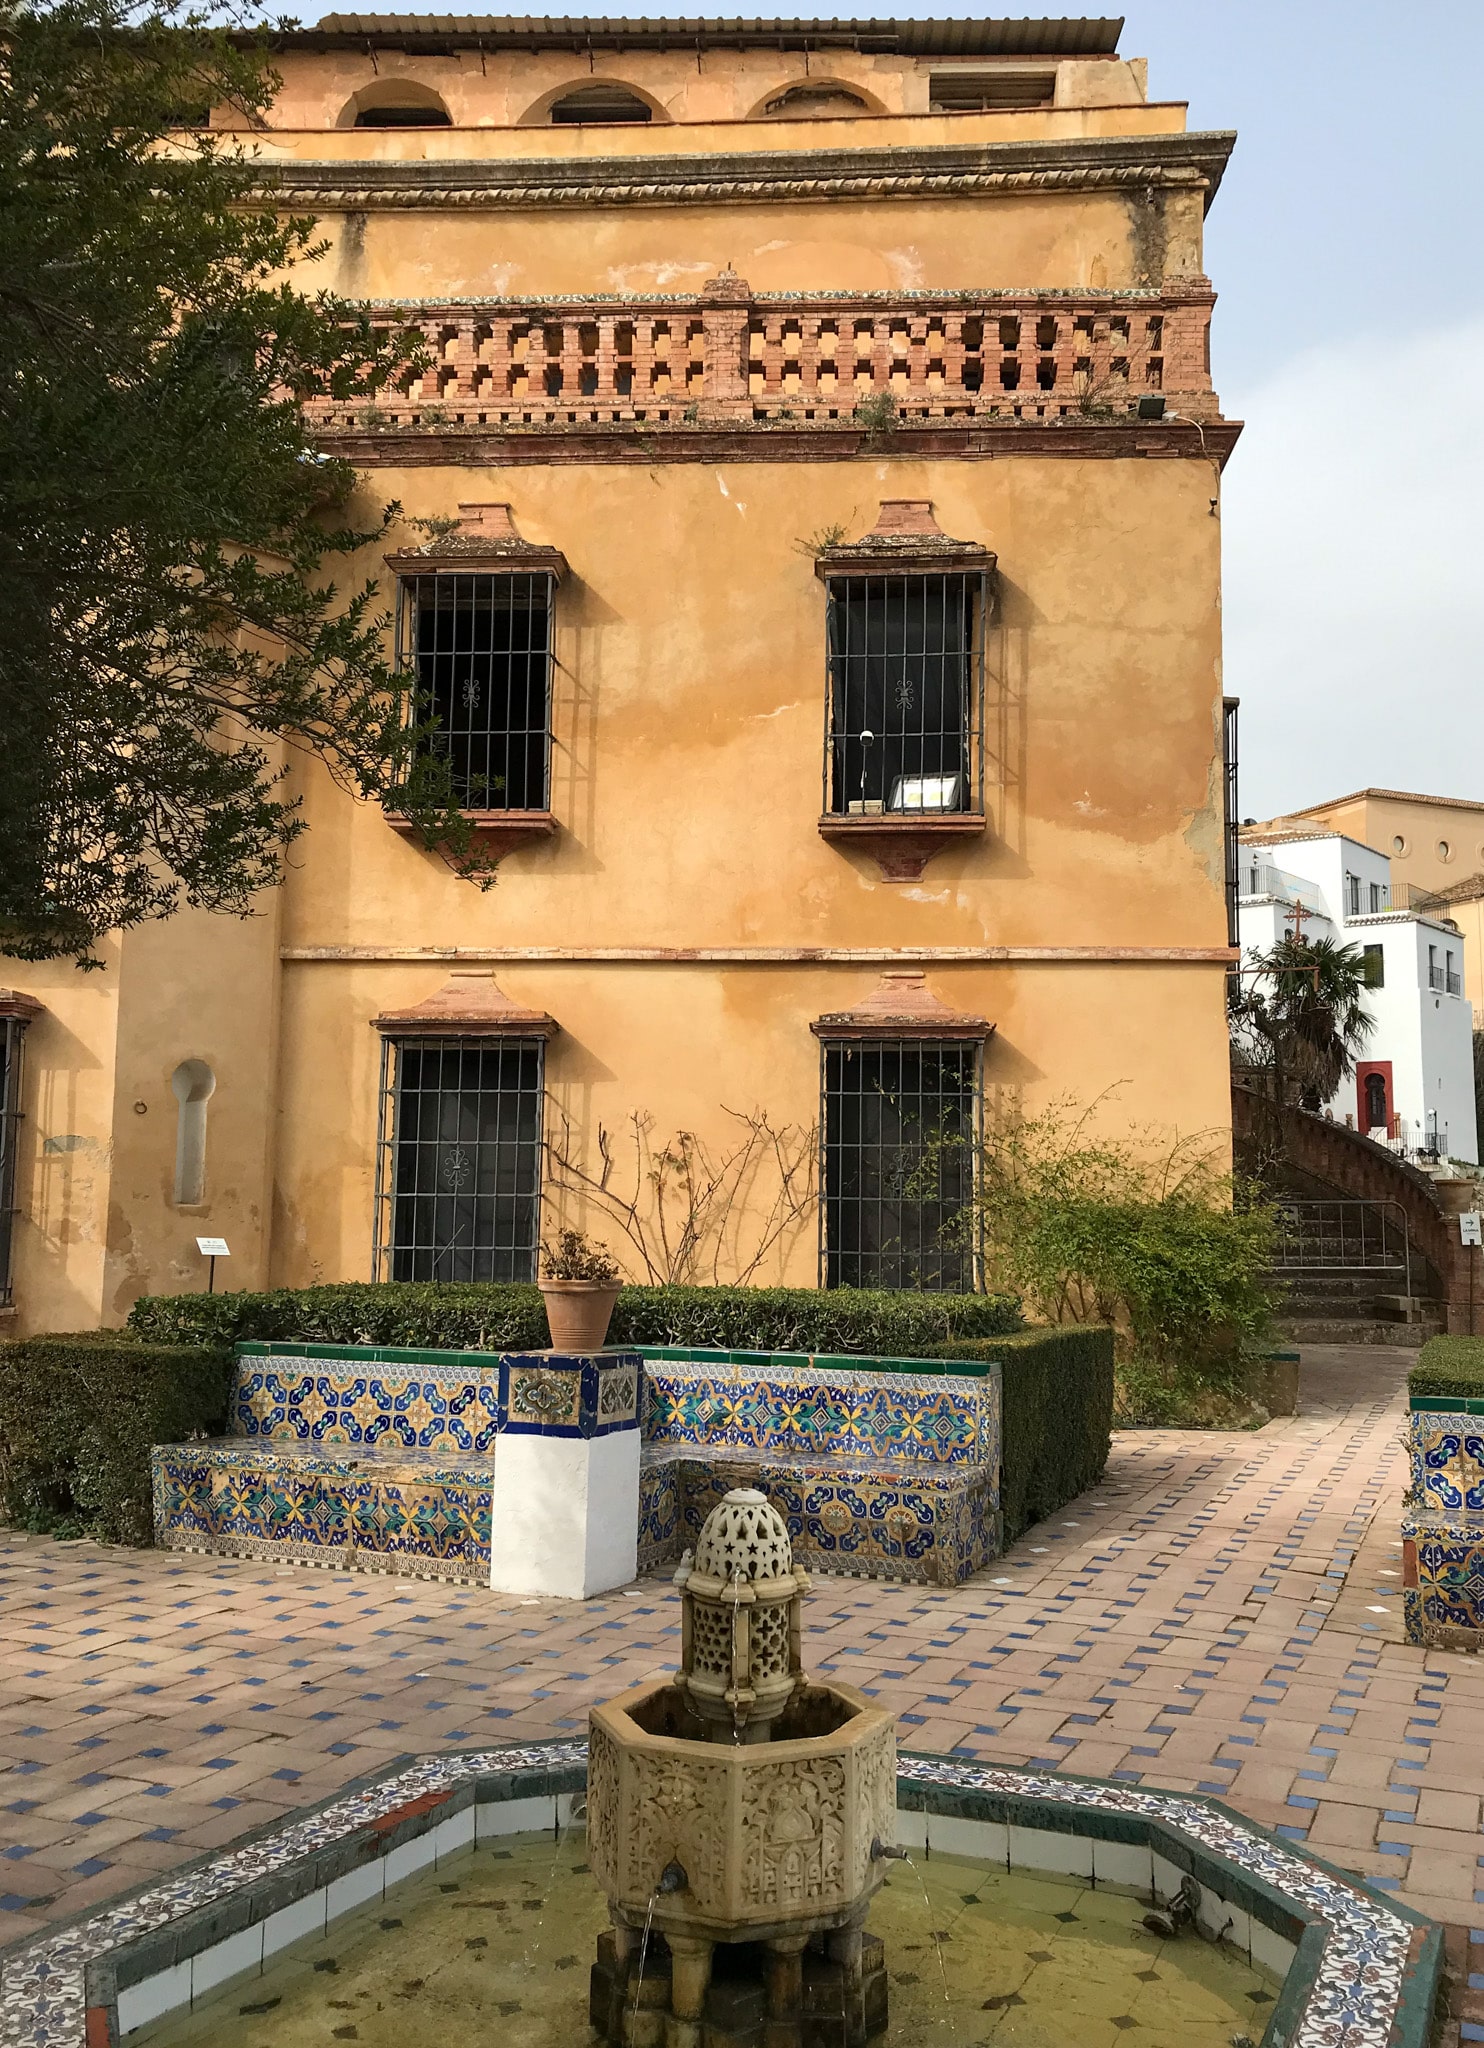 De sprookjesachtige tuin van Casa Del Rey Moro